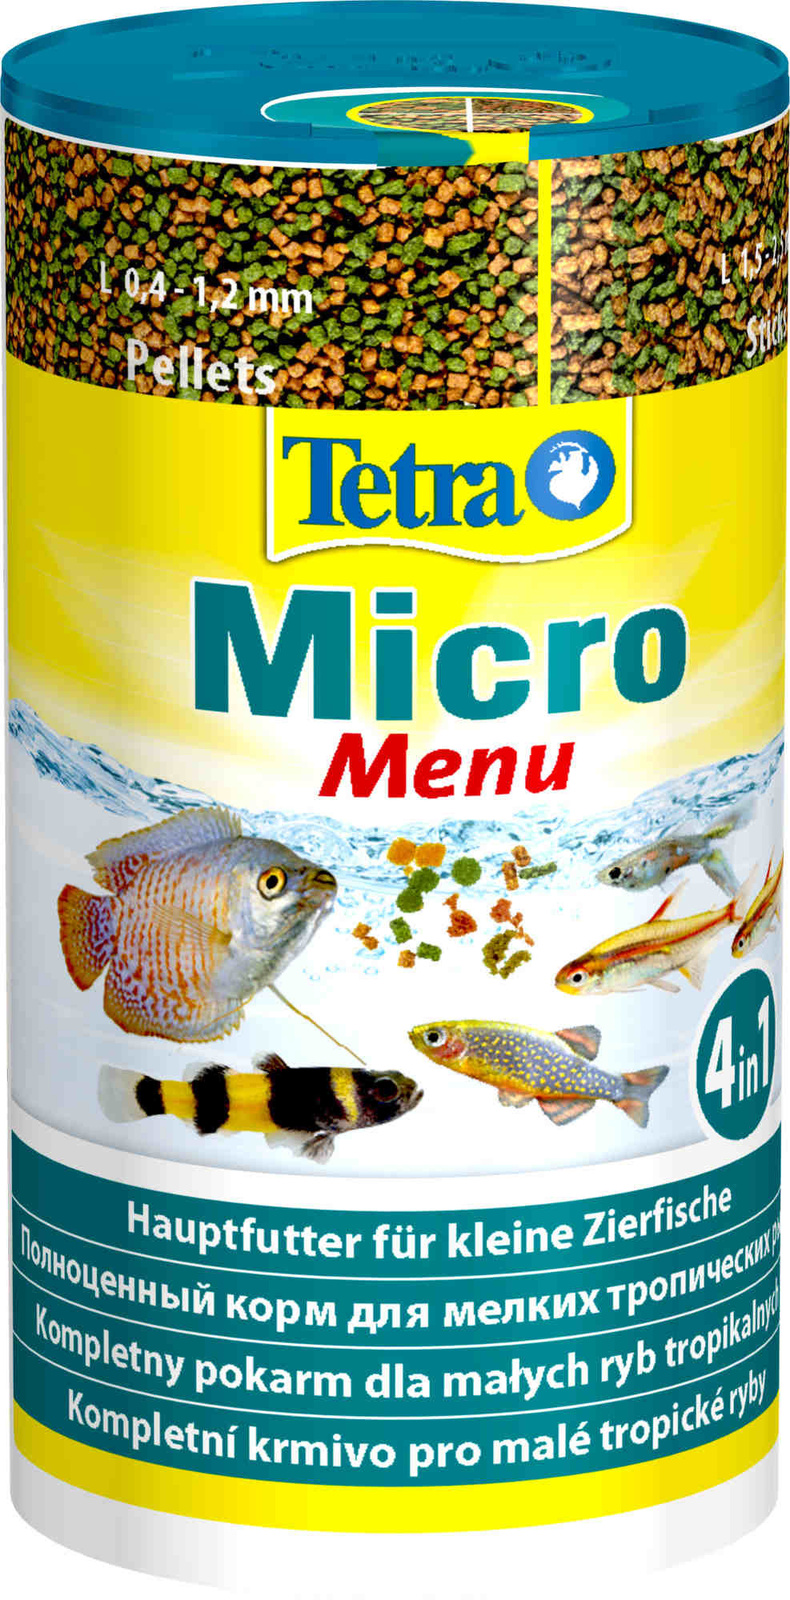 Tetra (корма) Tetra (корма) корм для всех видов мелких рыб, четыре вида корма (65 г) tetra корма tetra корма корм для всех видов рыб хлопья 12 г